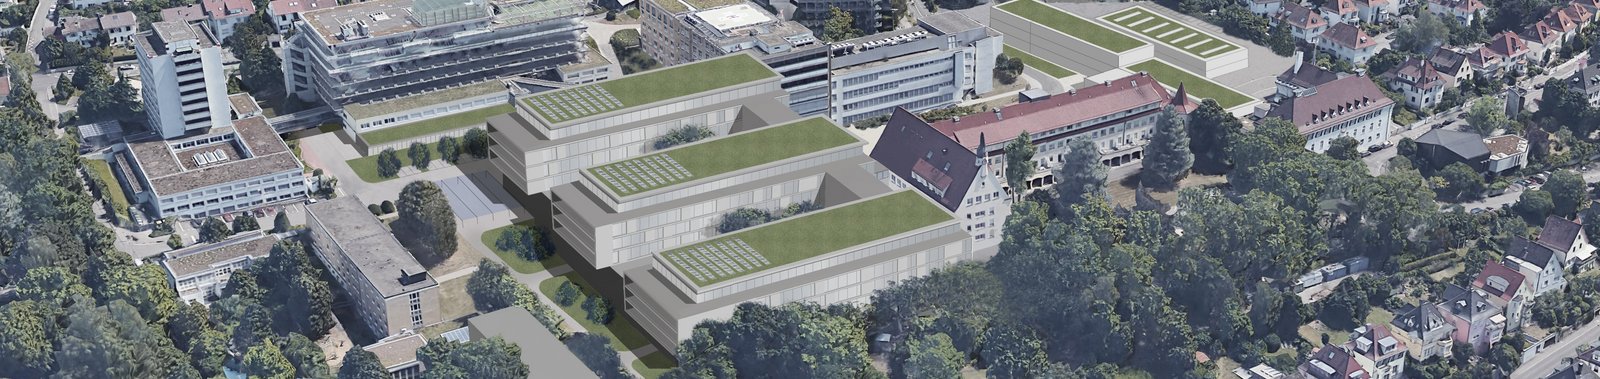 Foto Neubau Klinikum Esslingen